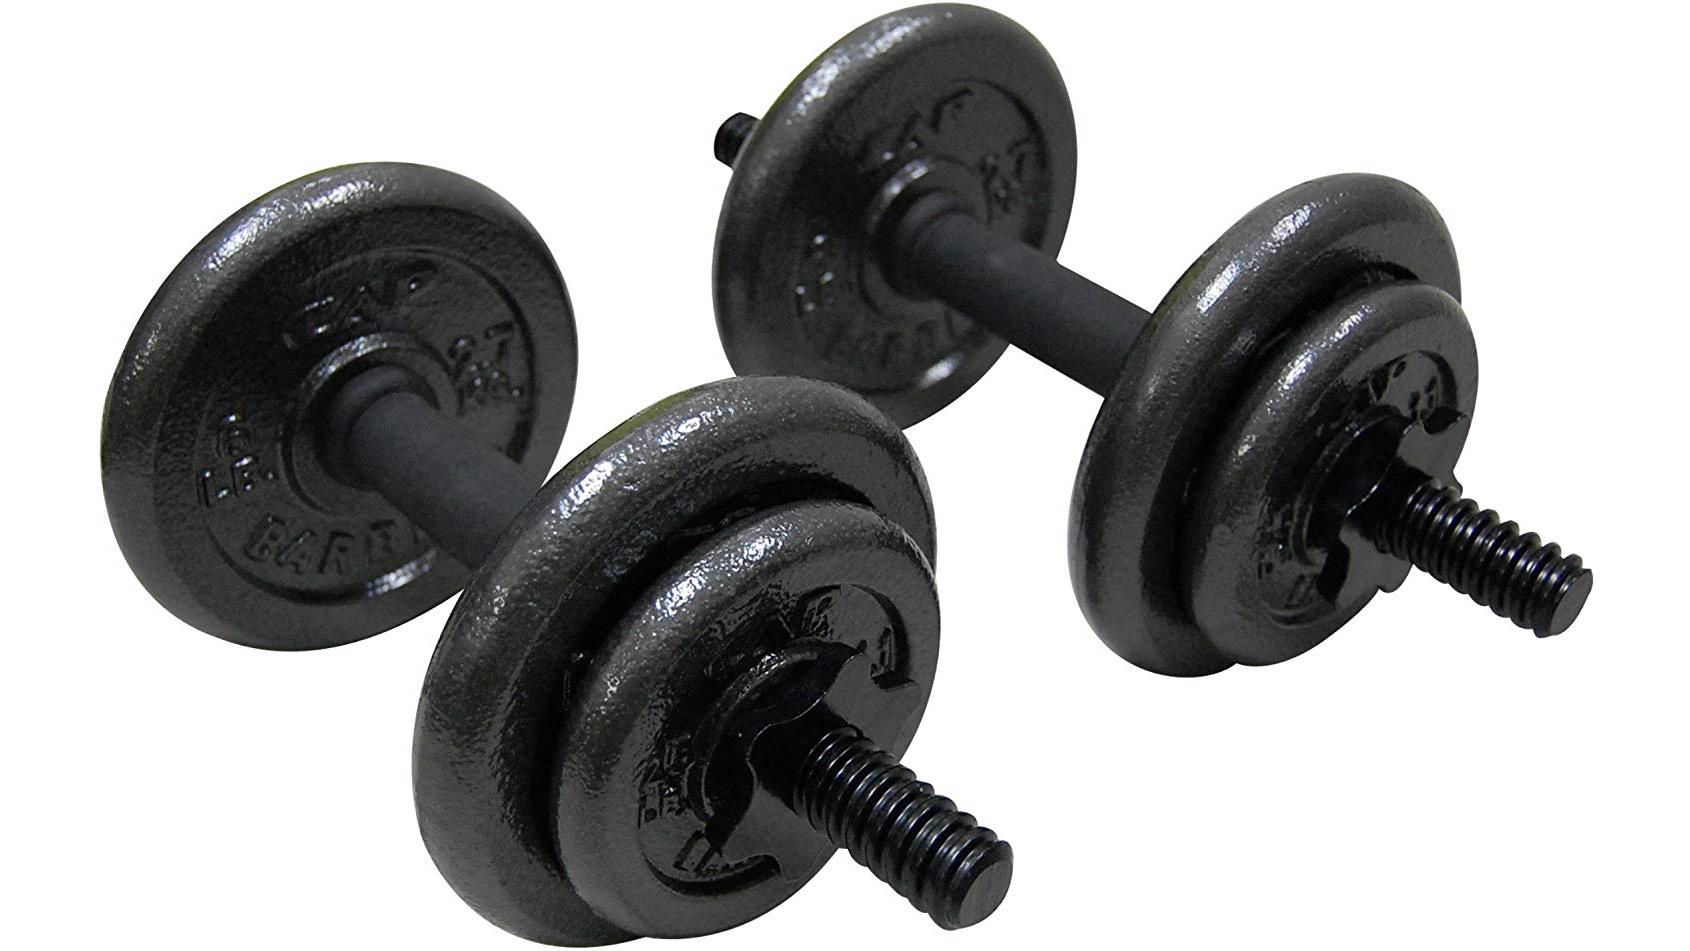 Best Home Gym Equipment Adjustable Weights 16x9